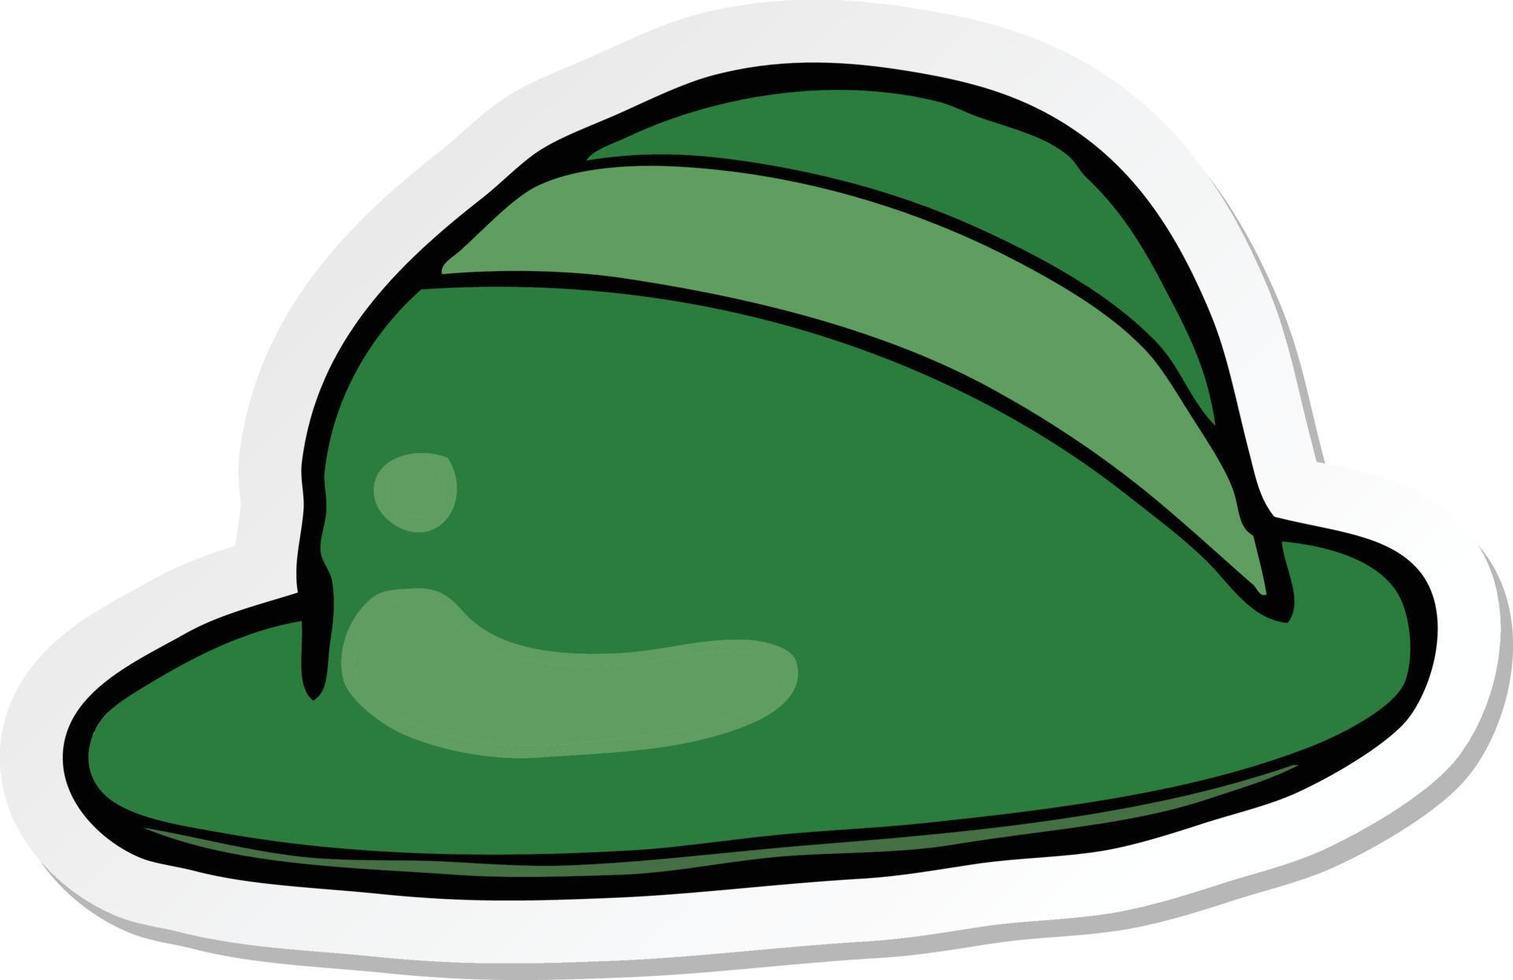 sticker of a cartoon bowler hat vector